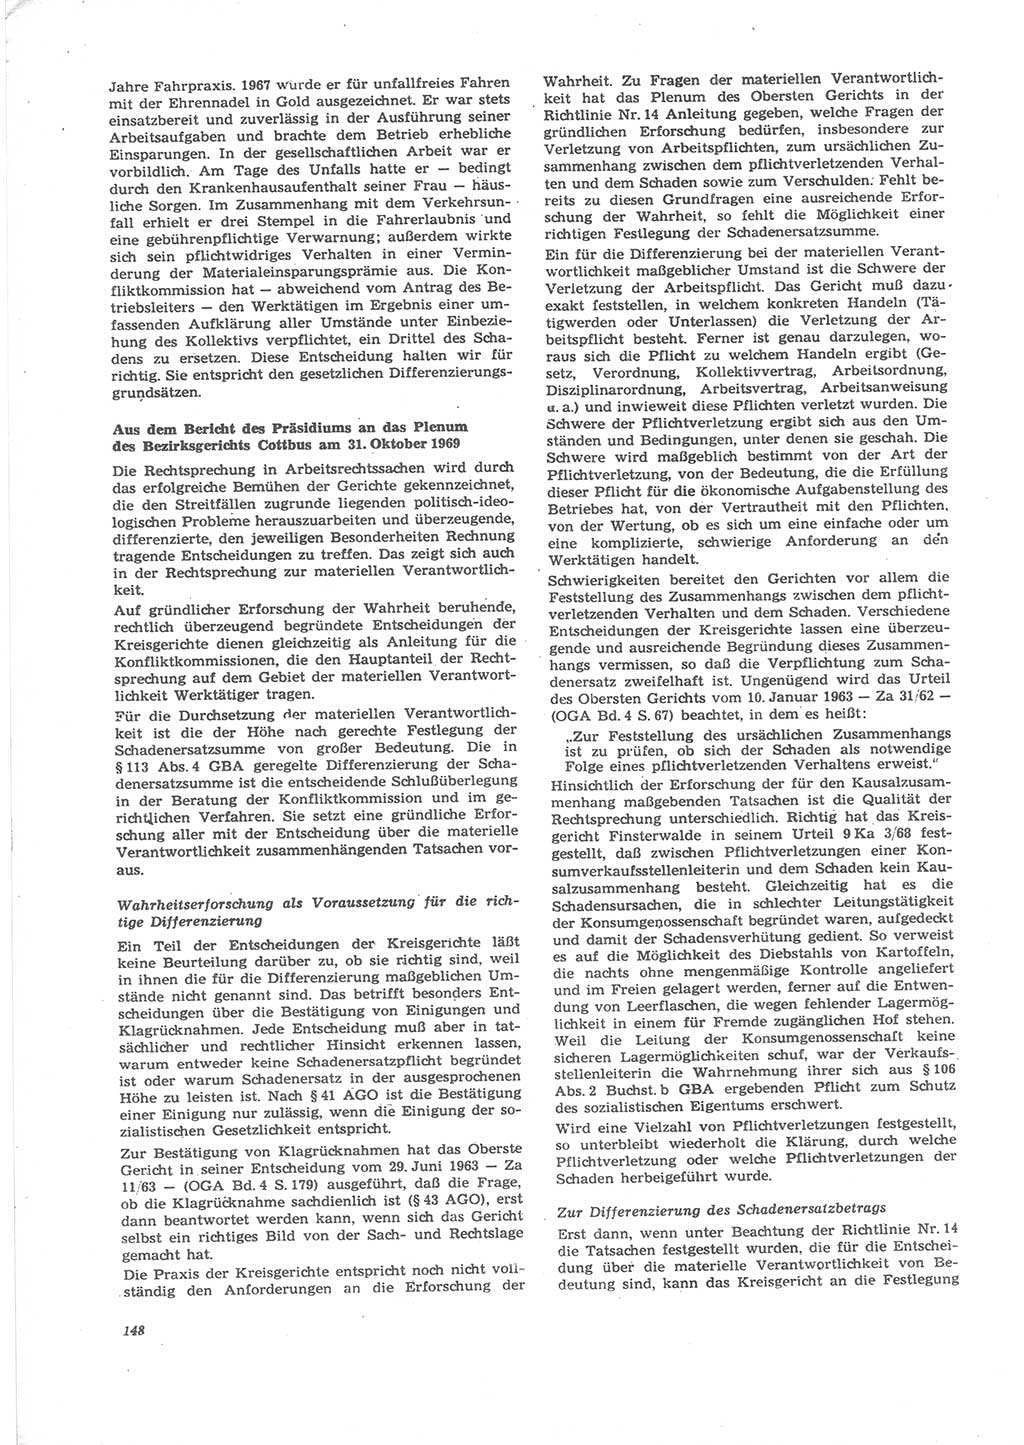 Neue Justiz (NJ), Zeitschrift für Recht und Rechtswissenschaft [Deutsche Demokratische Republik (DDR)], 24. Jahrgang 1970, Seite 148 (NJ DDR 1970, S. 148)